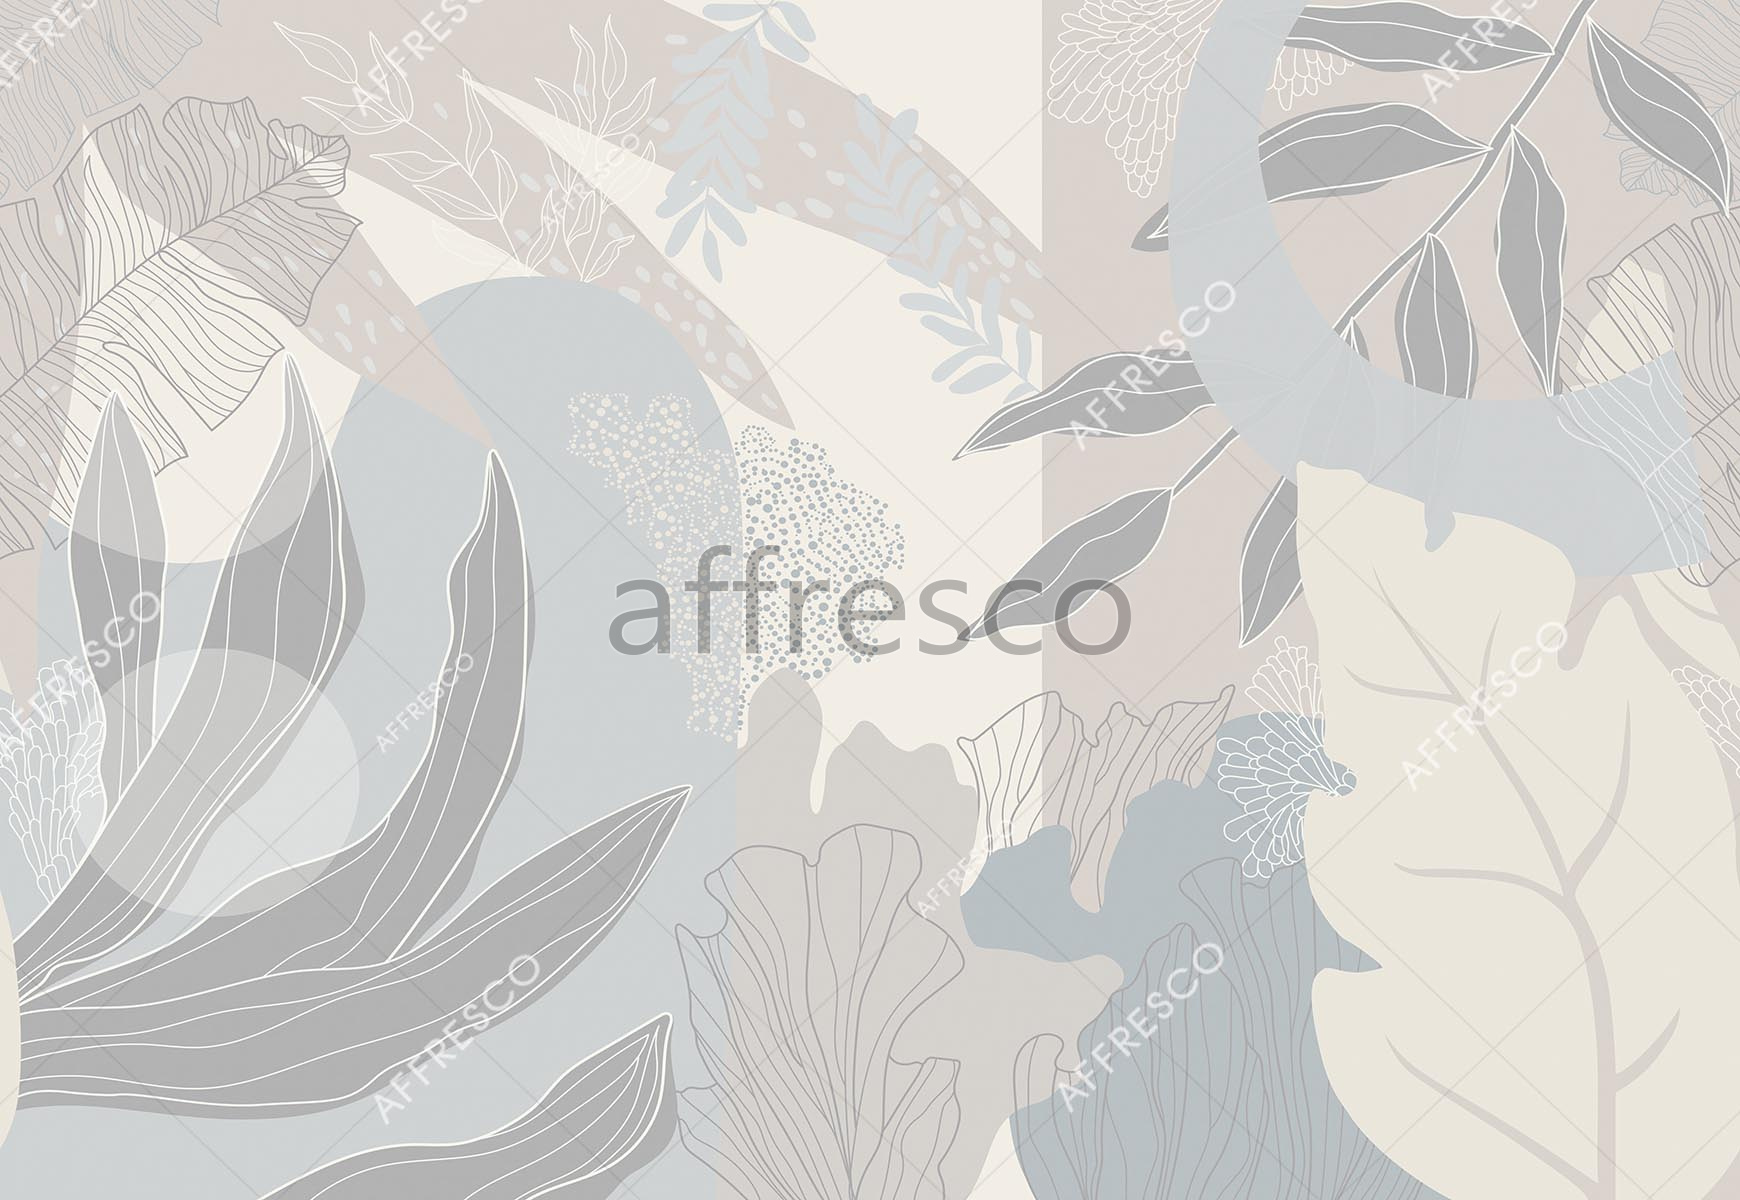 ID139370 | Graphics arts & Ornaments |  | Affresco Factory